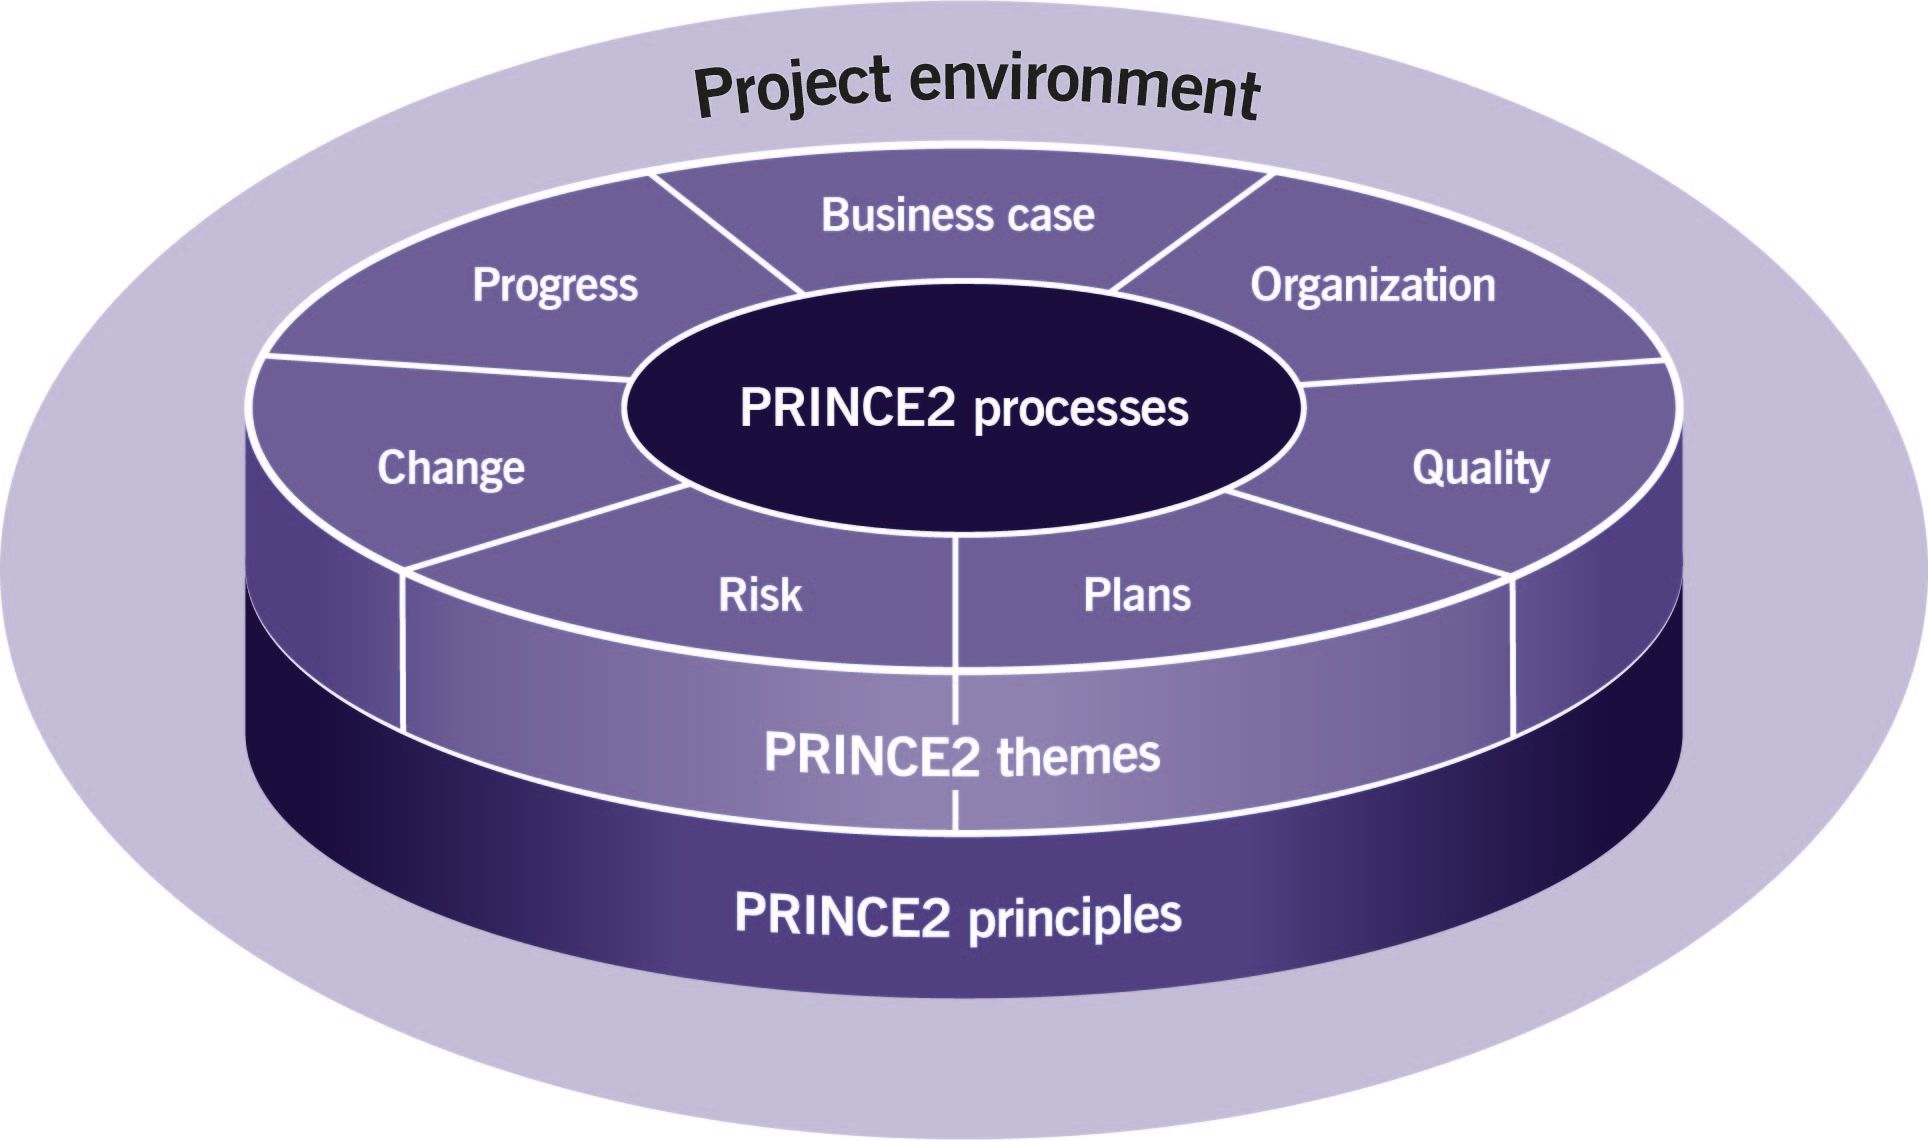 principles and themes of prince2